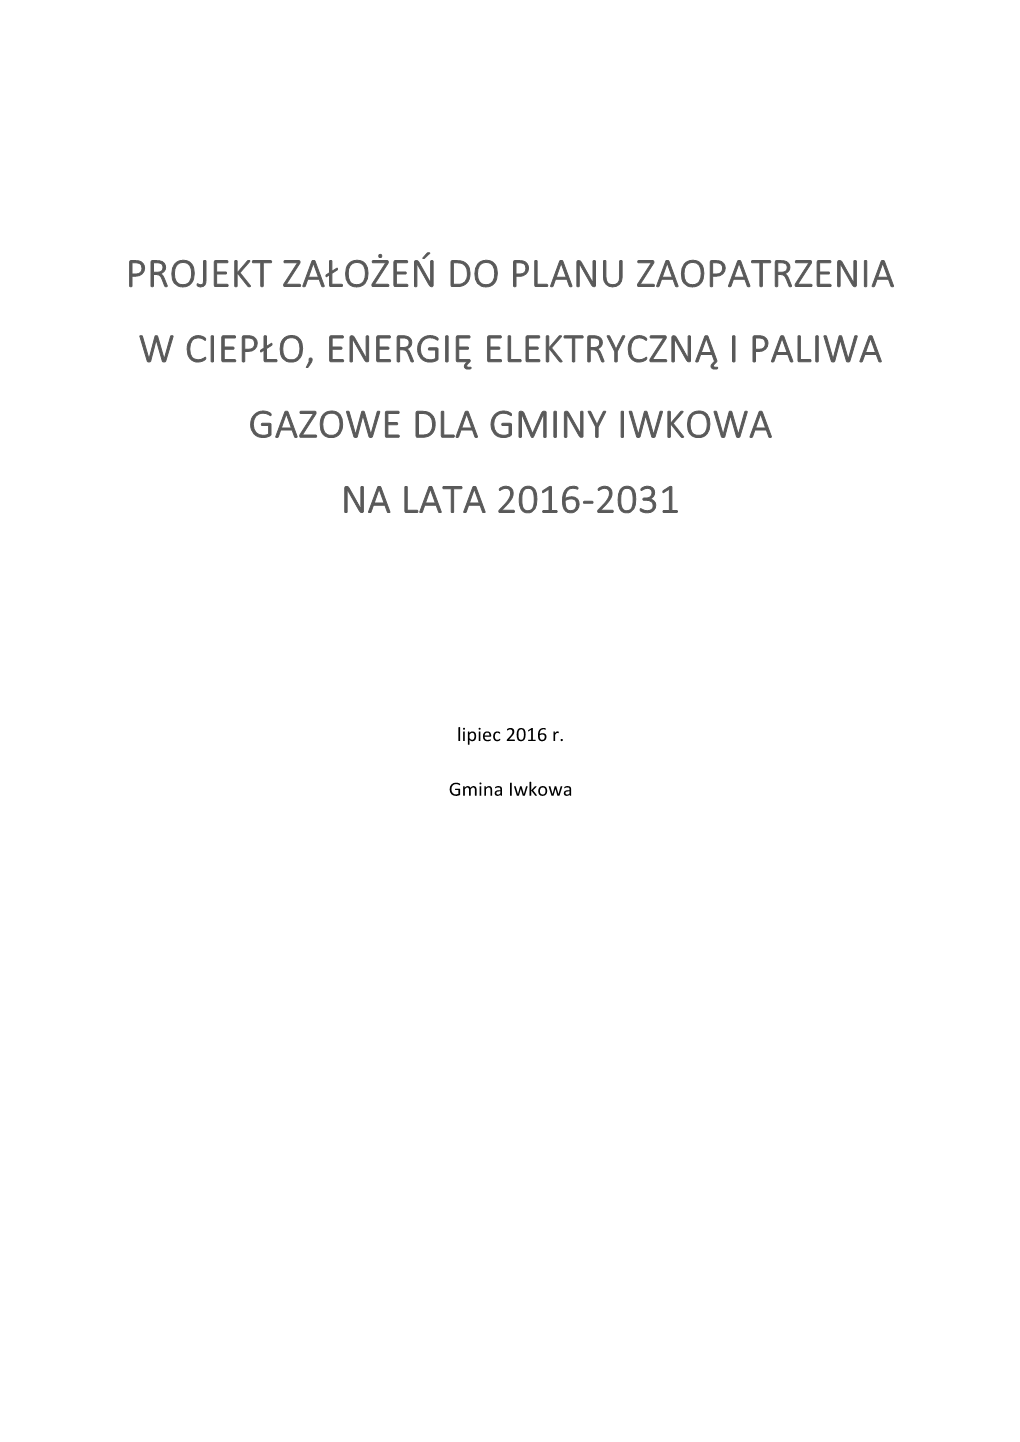 Projekt Założeń Do Planu Zaopatrzenia W Ciepło, Energię Elektryczną I Paliwa Gazowe Dla Gminy Iwkowa Na Lata 2016-2031